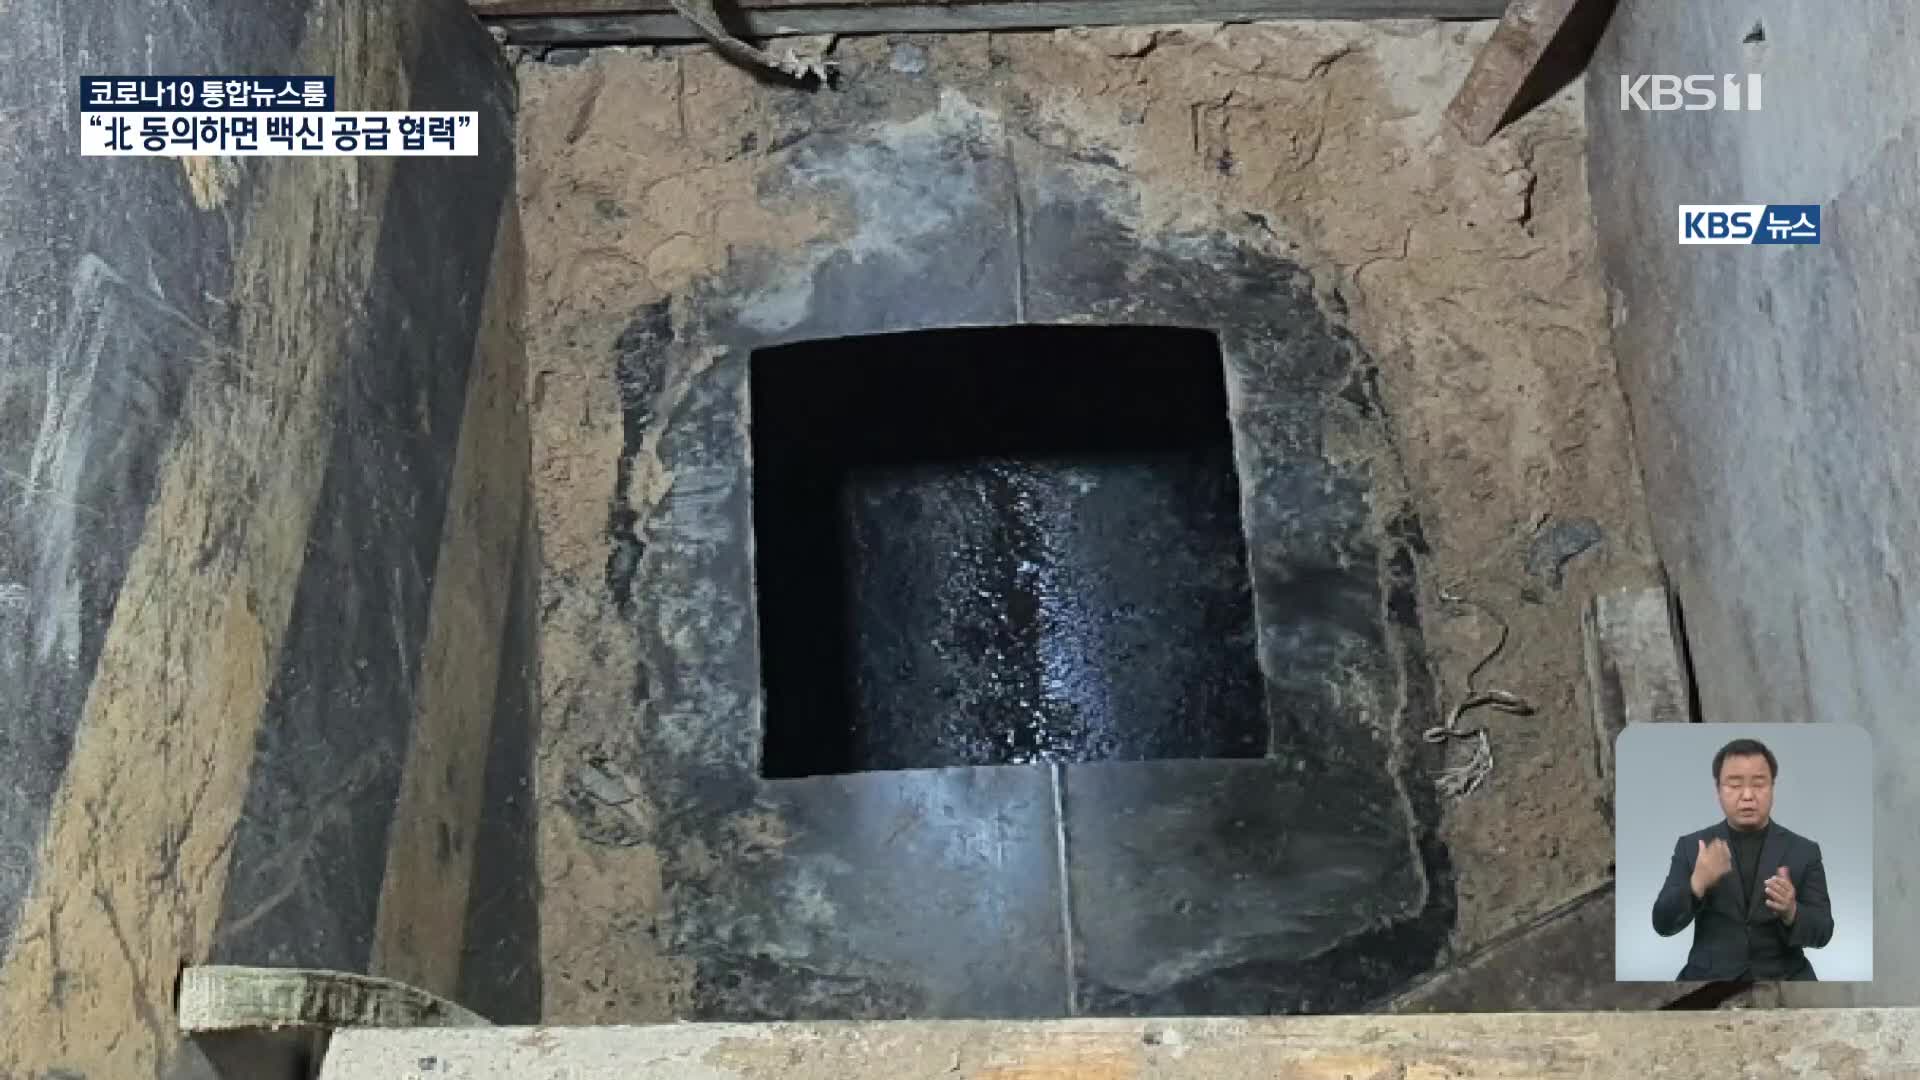 맨홀에서 작업하던 4명 유독가스 흡입…거푸집 무너져 1명 숨져